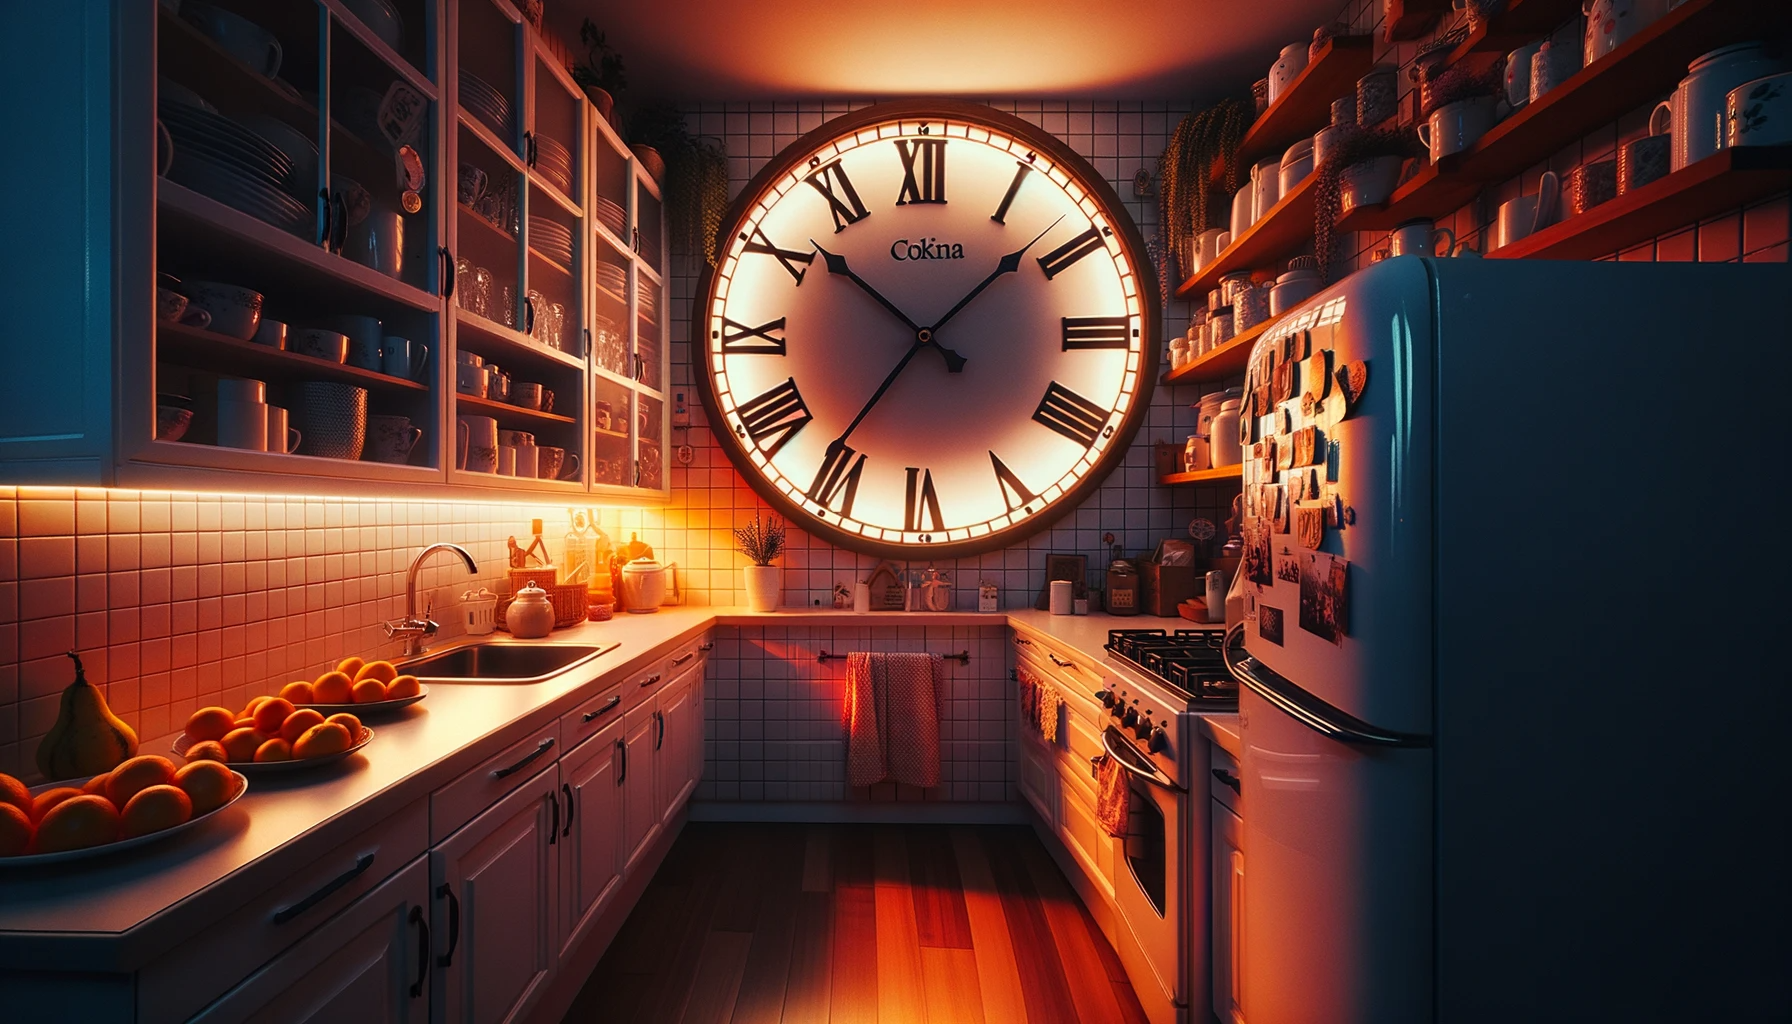 cenário fictício de uma cozinha com um relógio enorme para ilustrar como economizar tempo na cozinha